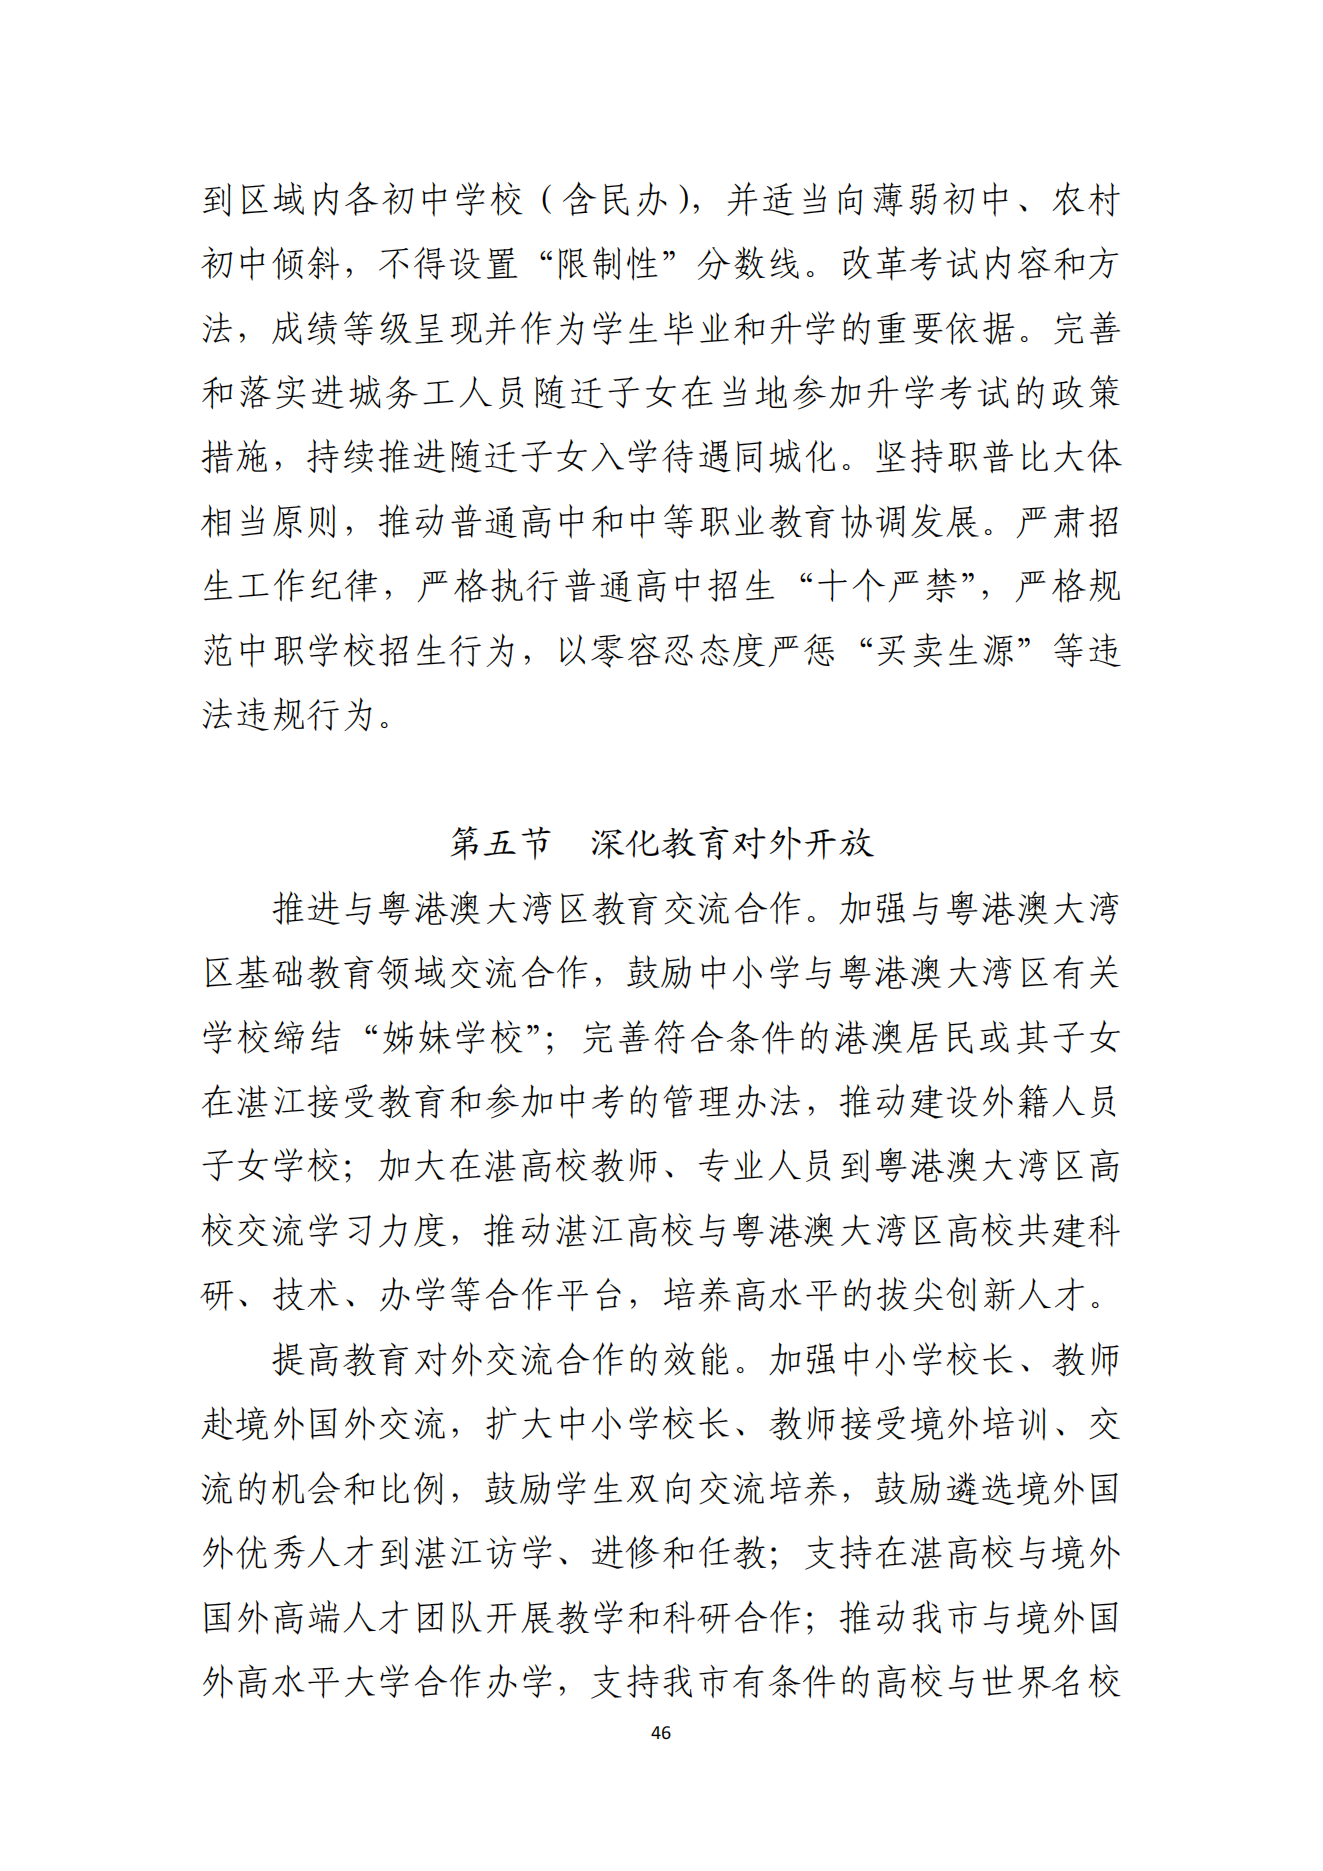 湛江市人民政府办公室关于印发湛江市教育发展“十四五”规划的通知_45.png